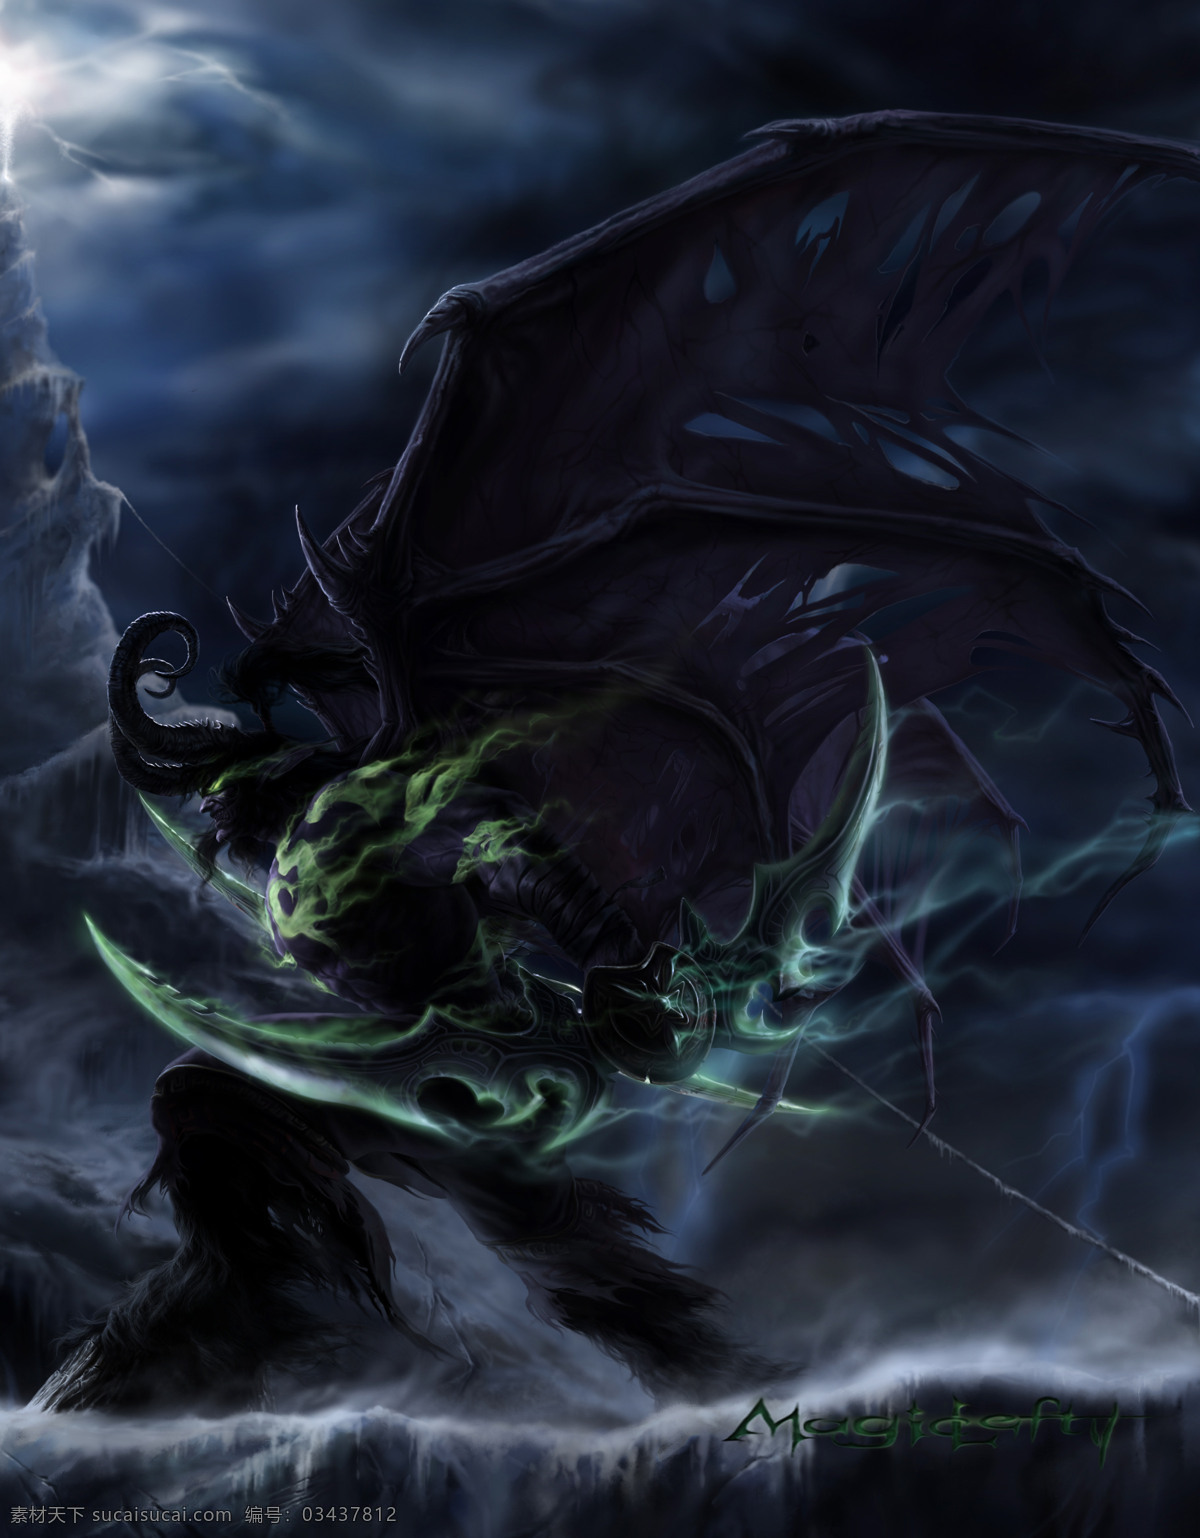 魔兽世界 恶魔 刀 翅膀 犄角 魔兽 游戏壁纸 动漫动画